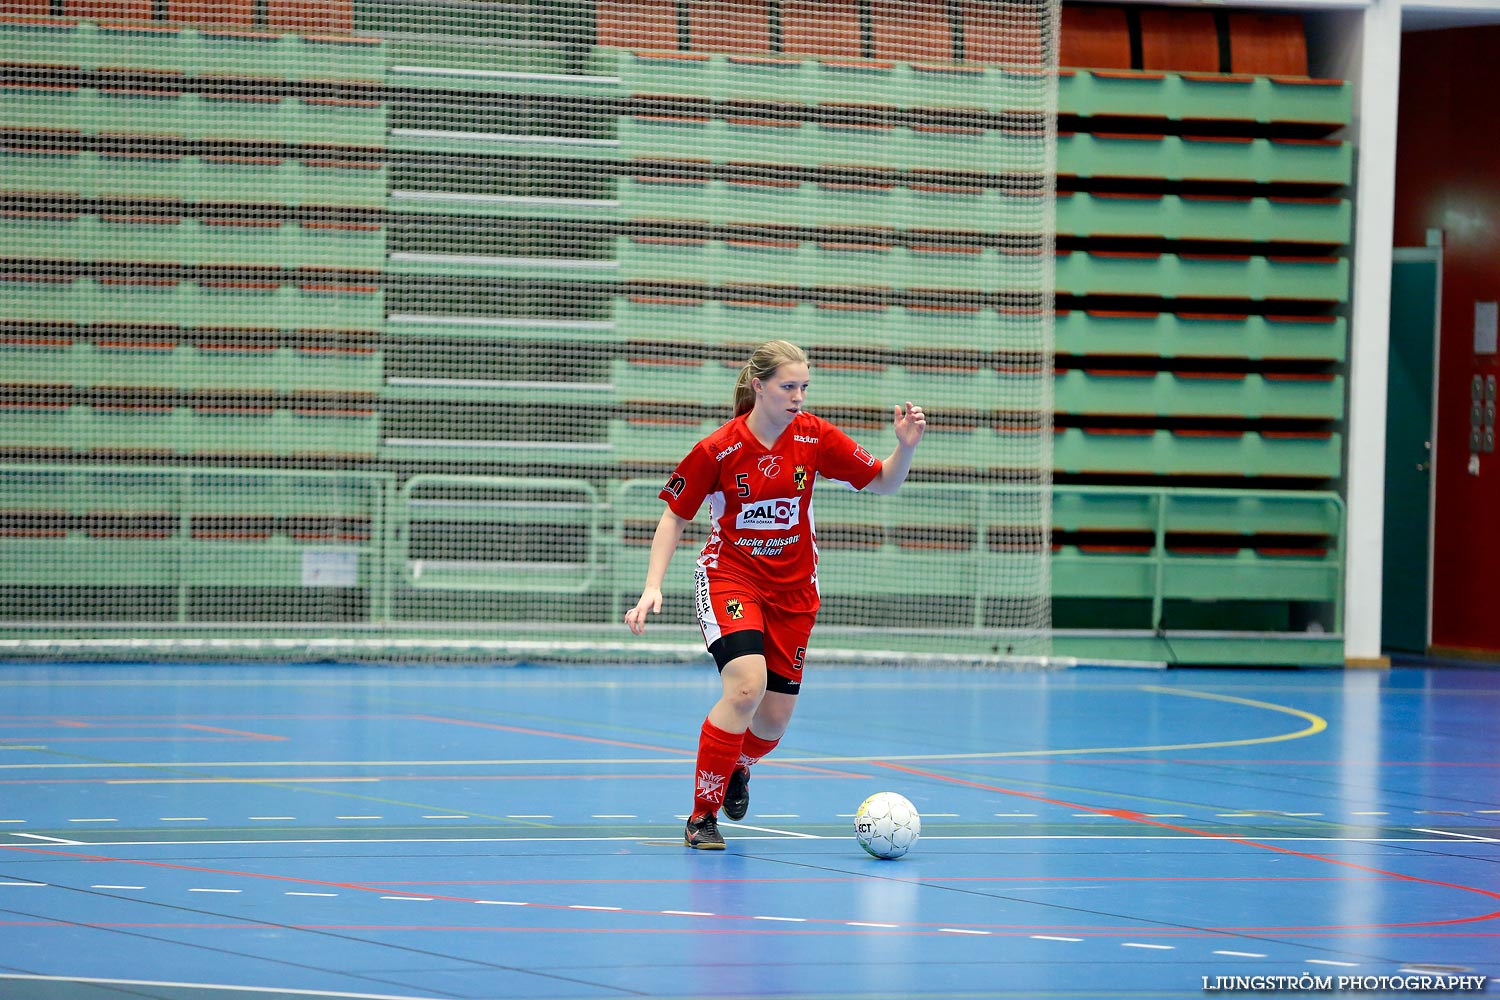 Skövde Futsalcup Damer QBIK-Töreboda IK,dam,Arena Skövde,Skövde,Sverige,Skövde Futsalcup 2013,Futsal,2013,98387